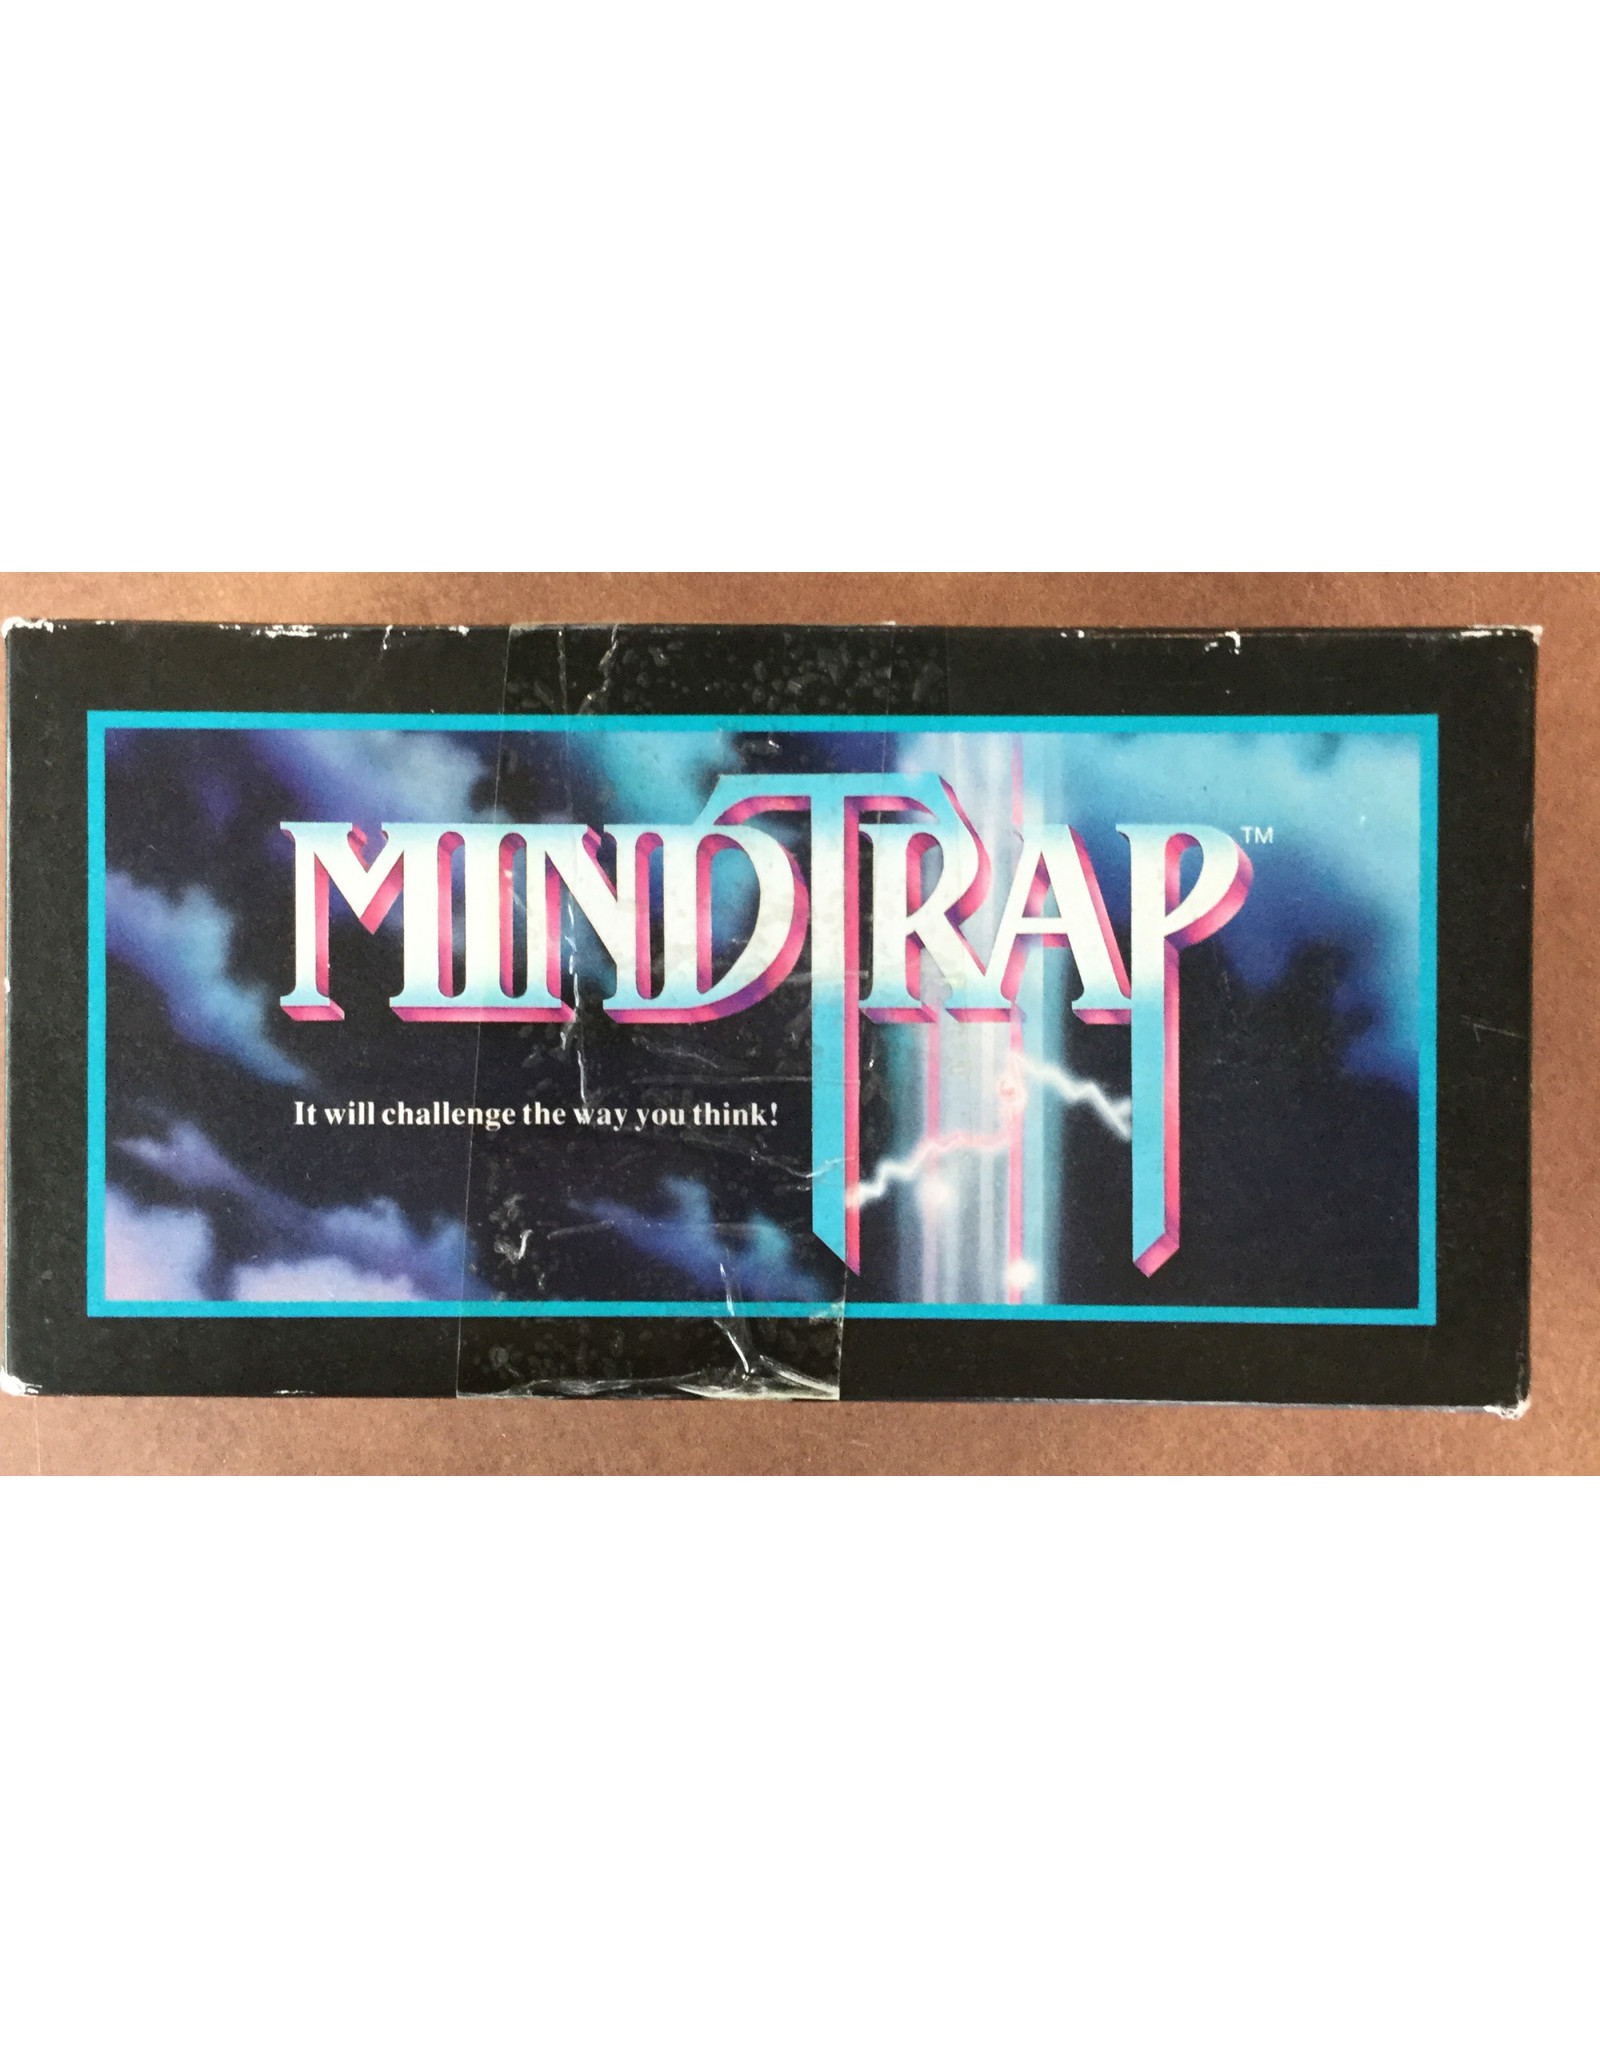 Mattel Mindtrap (1991)